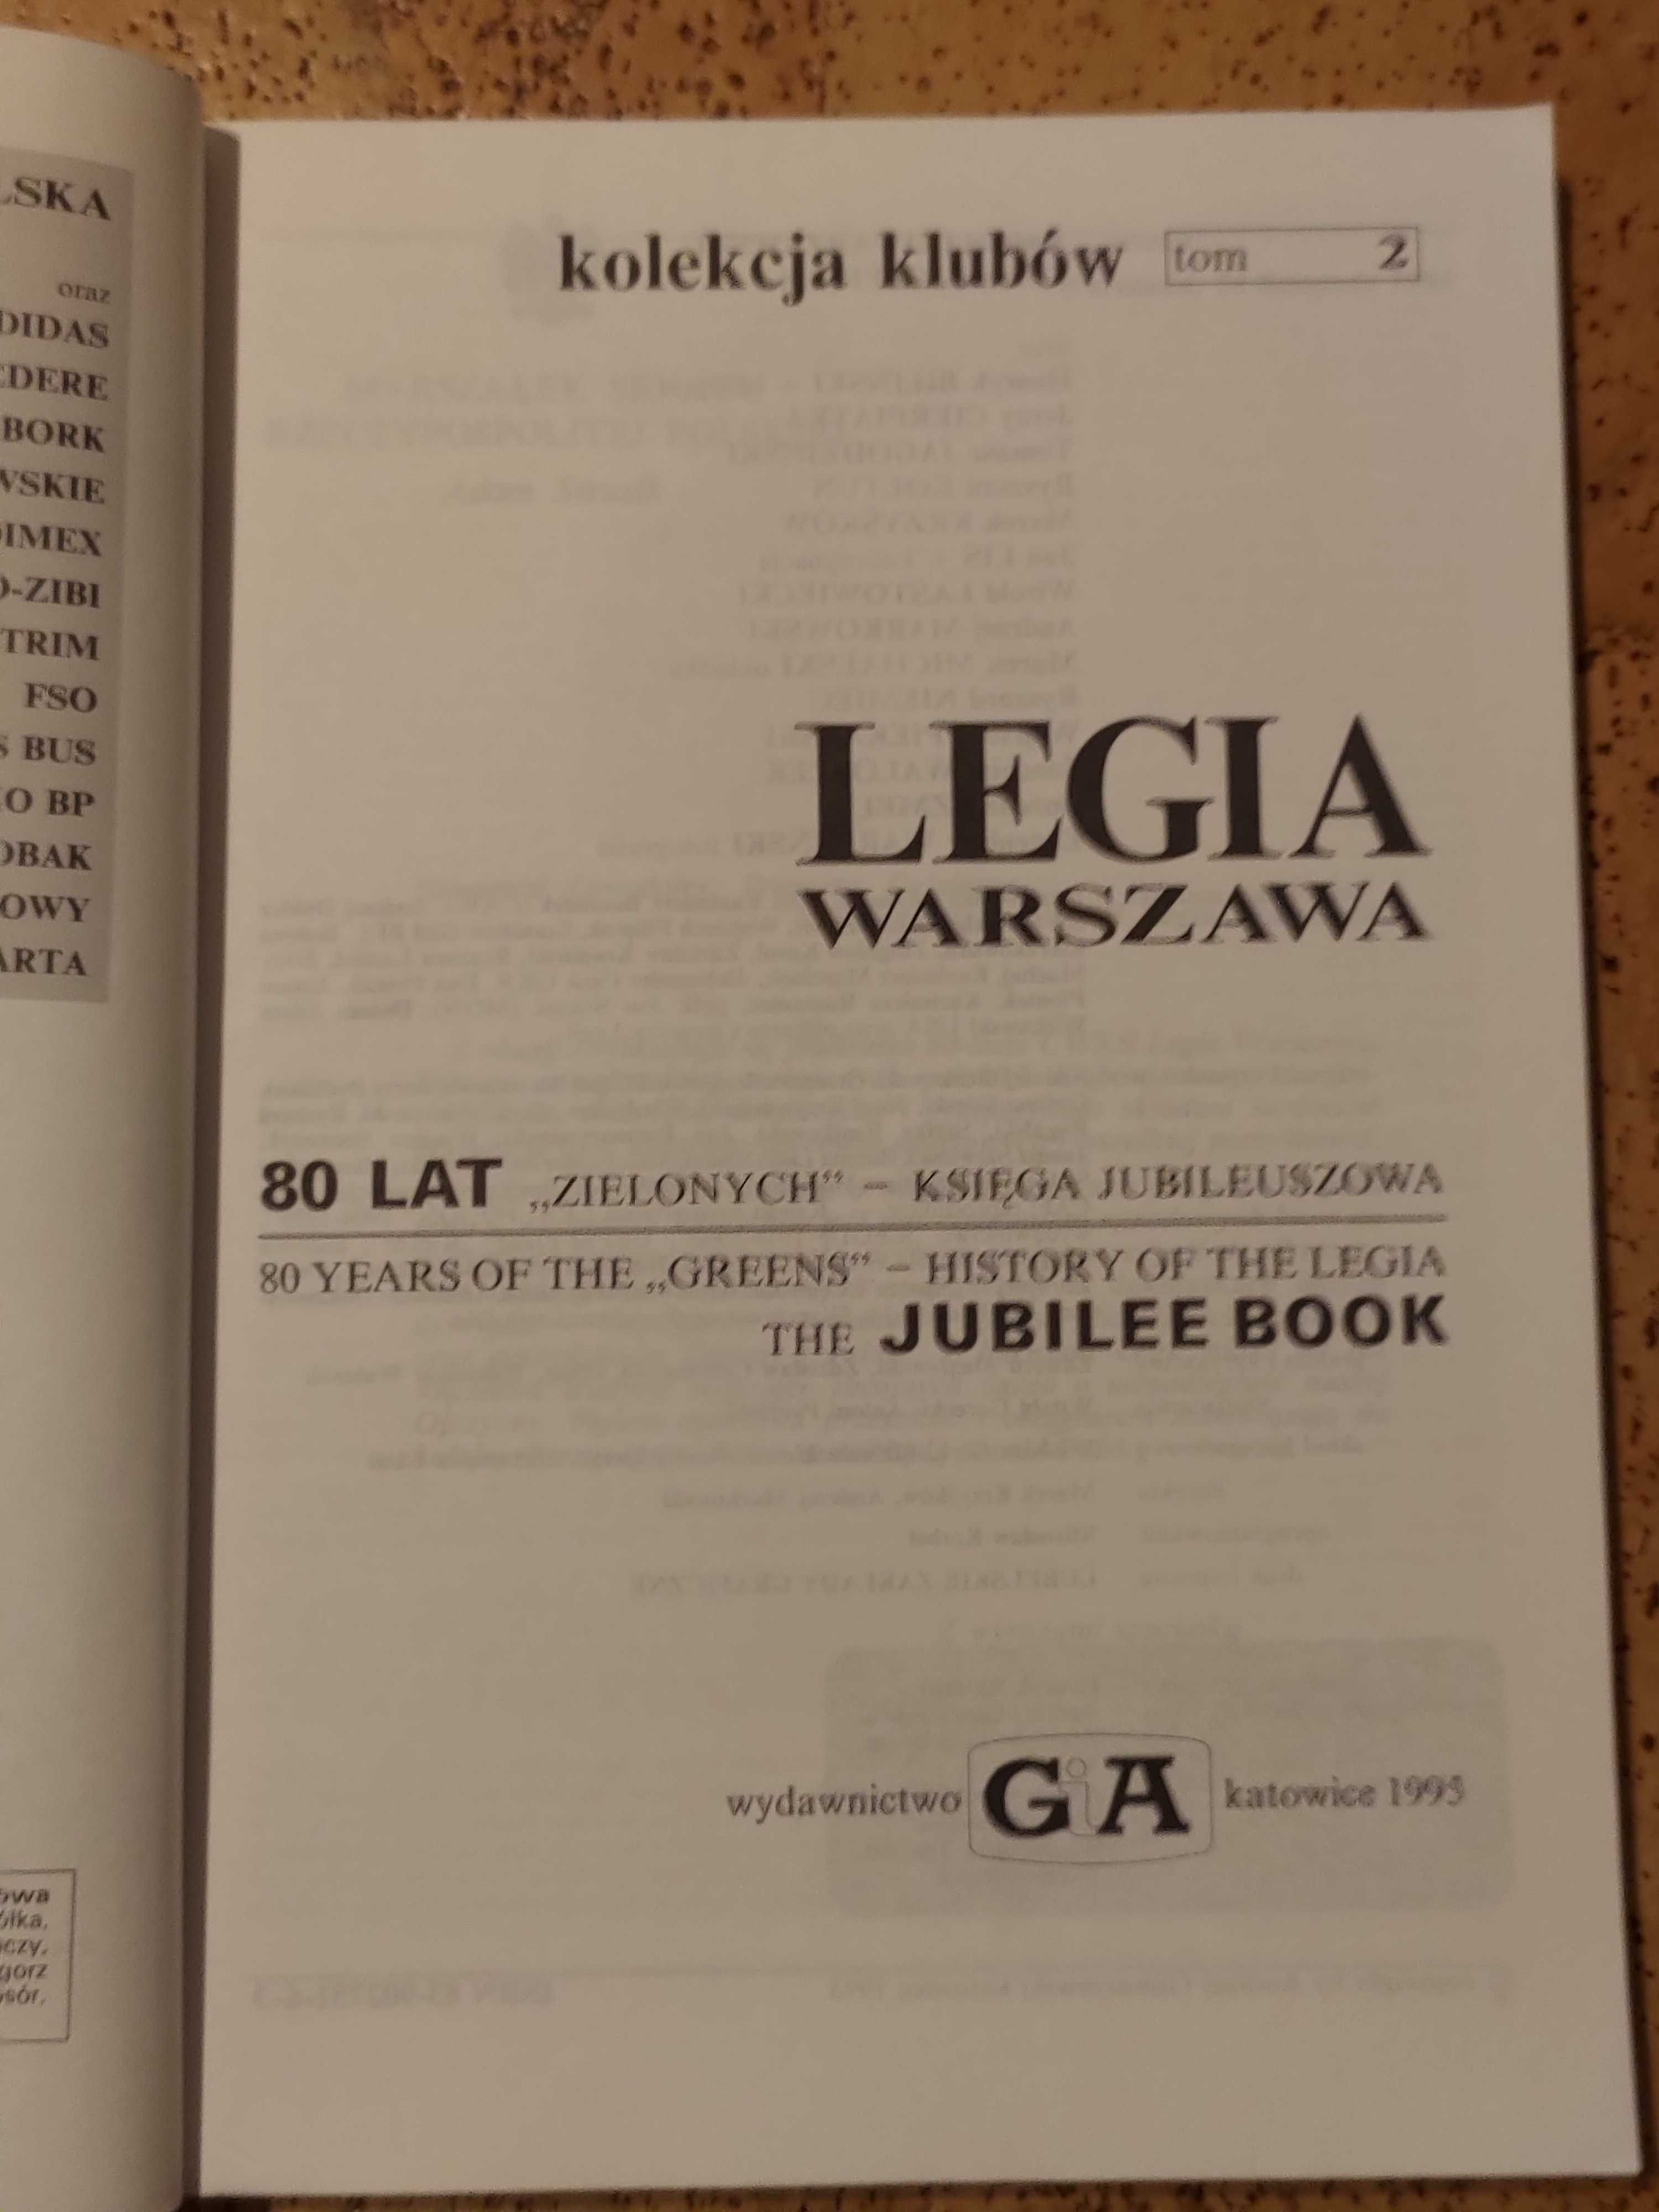 Legia Warszawa kolekcja klubów encyklopedia piłkarska Fuji książka